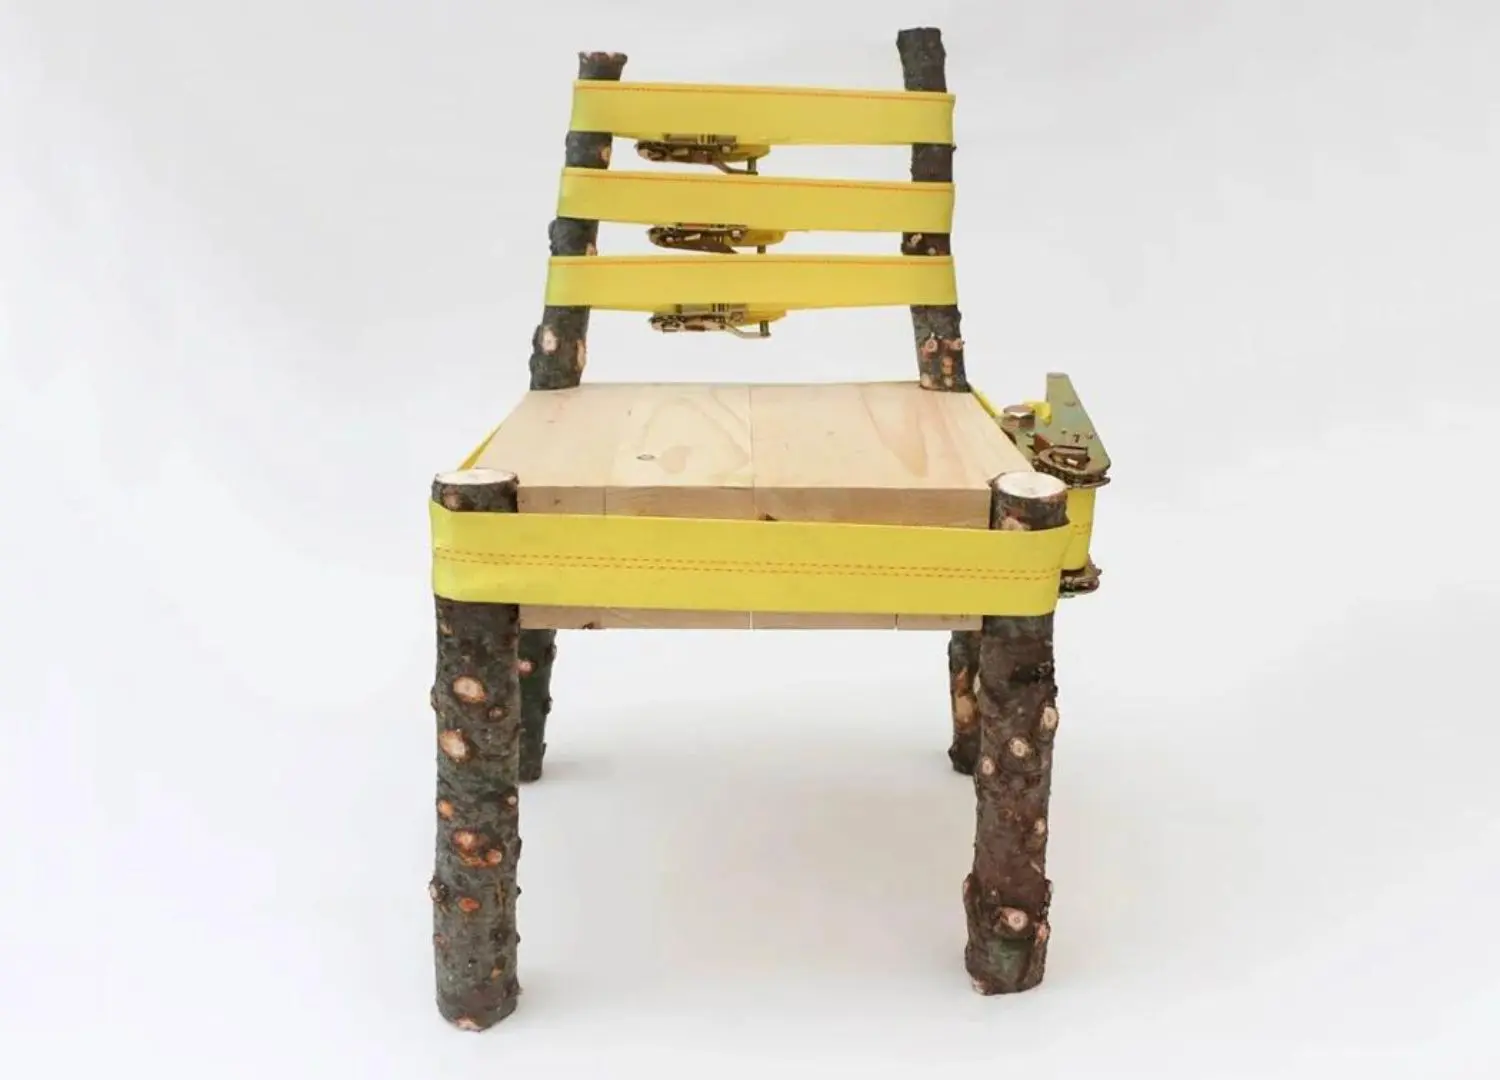 Strap Chair by Nicholas Baker - Unique furniture designs _ ratchet straps